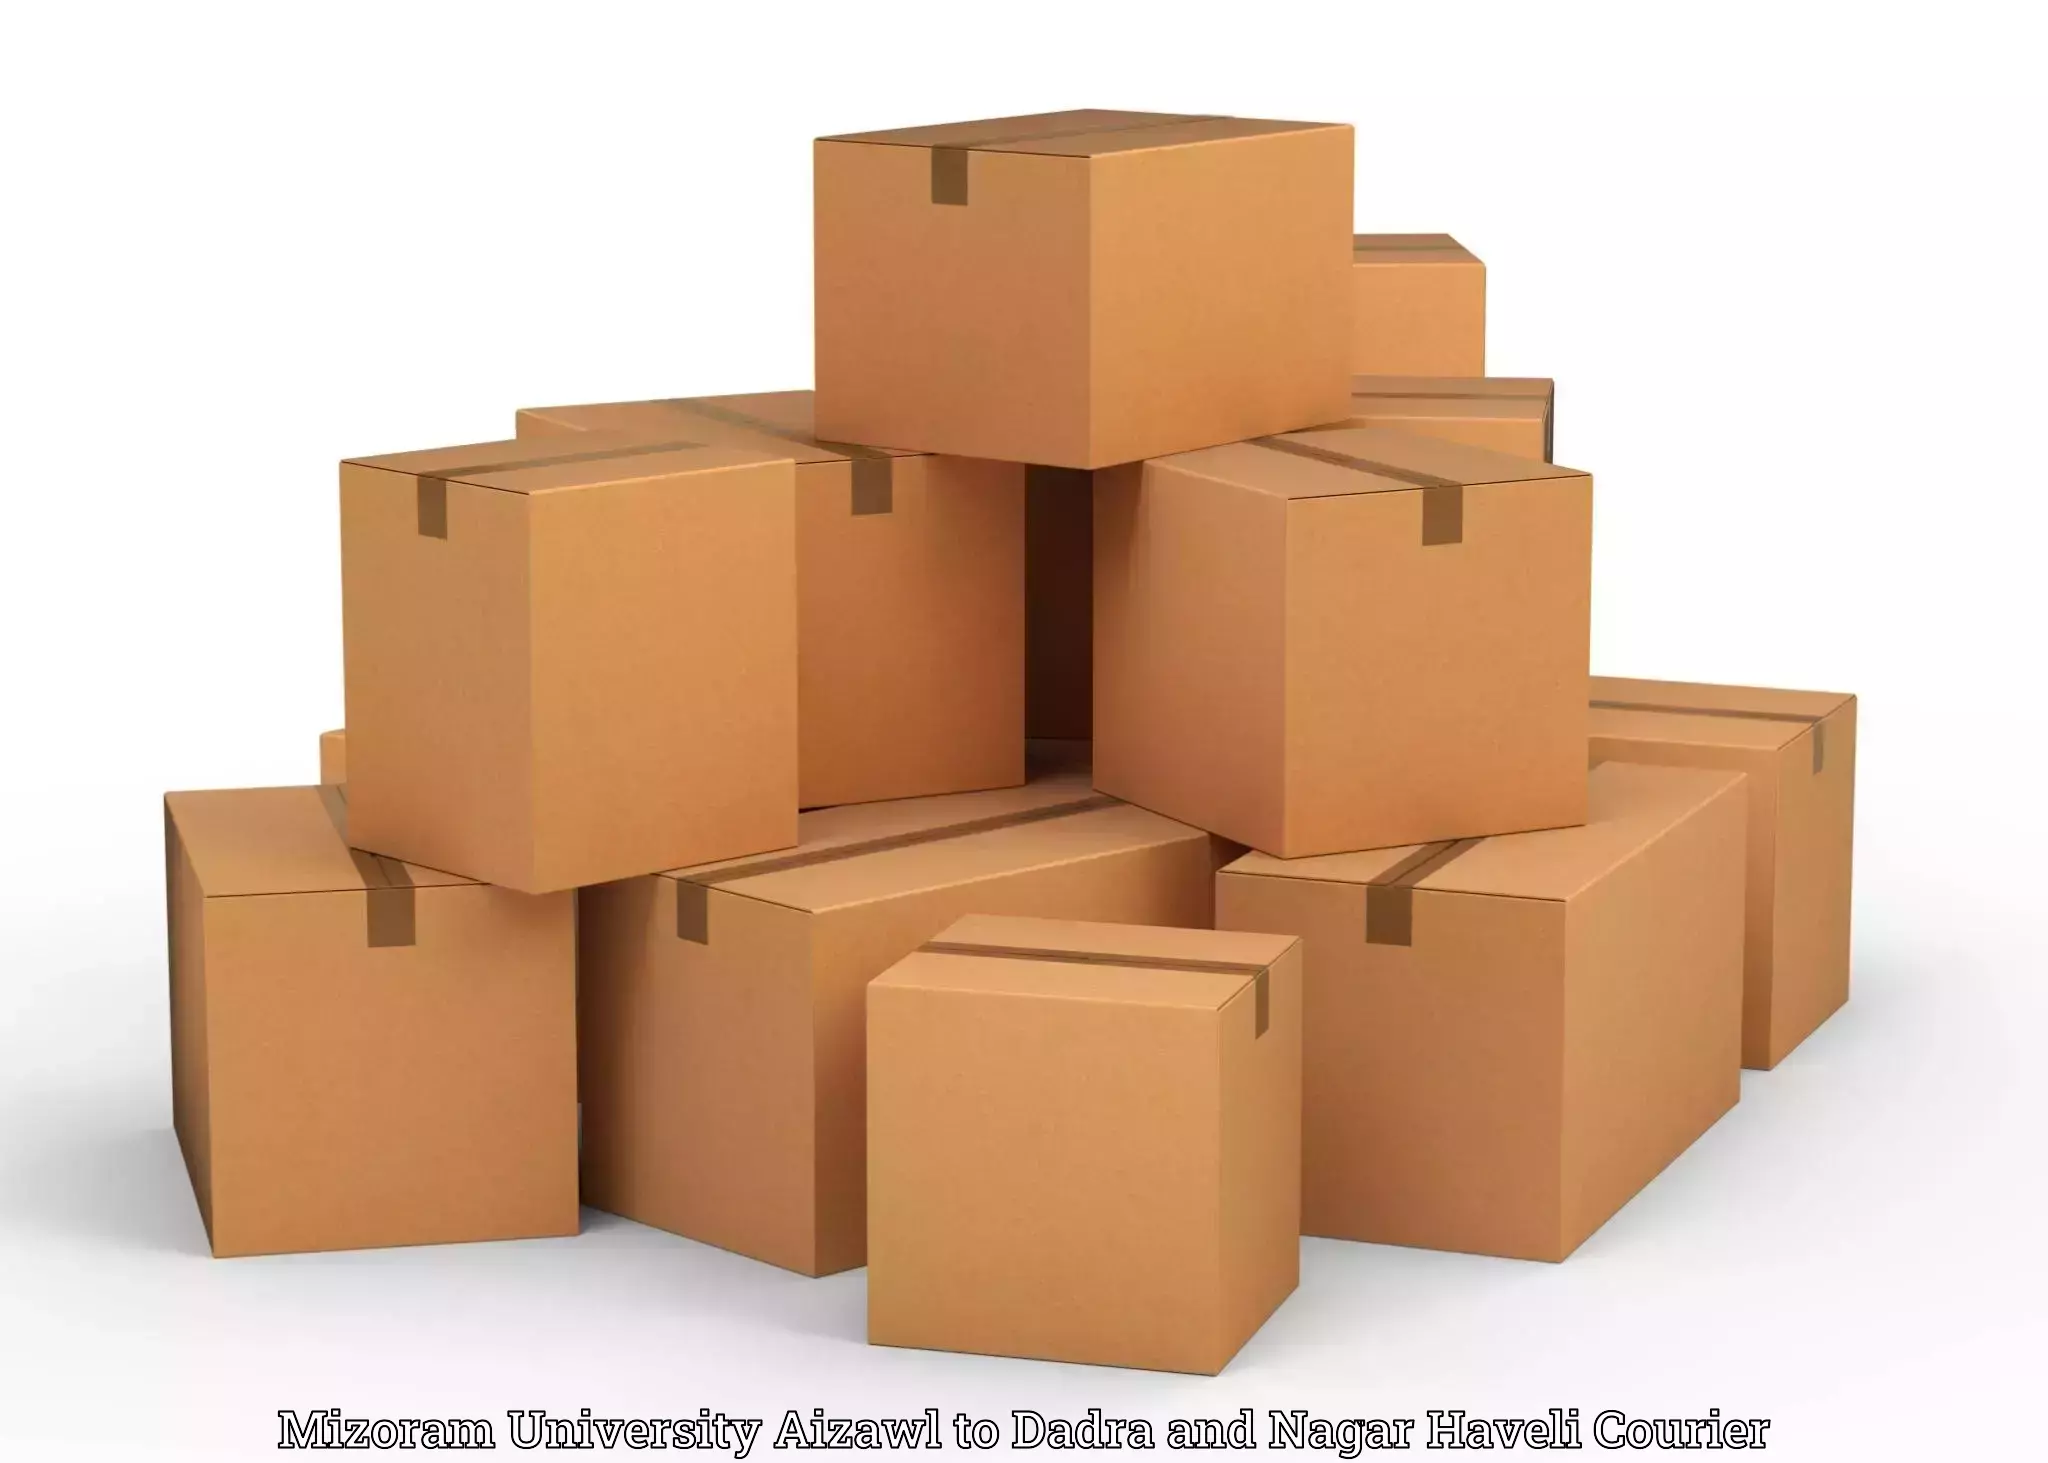 Household goods movers and packers Mizoram University Aizawl to Dadra and Nagar Haveli